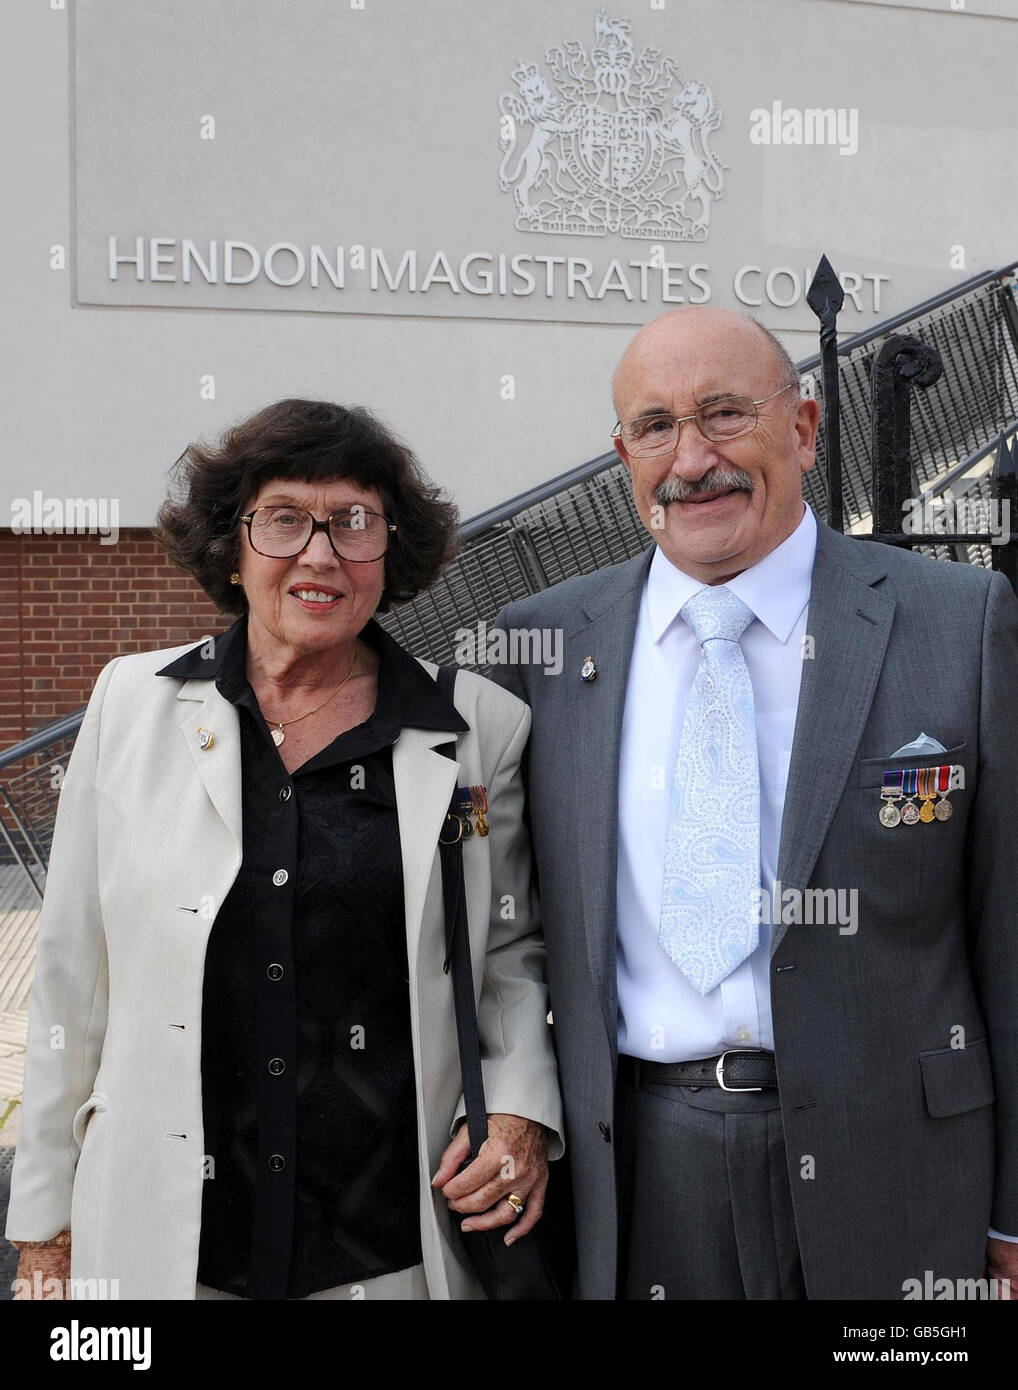 Rita y Tom Glenister, que se han negado a pagar parte de su impuesto del consejo como protesta contra el costo de los Juegos Olímpicos, en las afueras del Tribunal de magistrados de Hendon, en el norte de Londres. Foto de stock